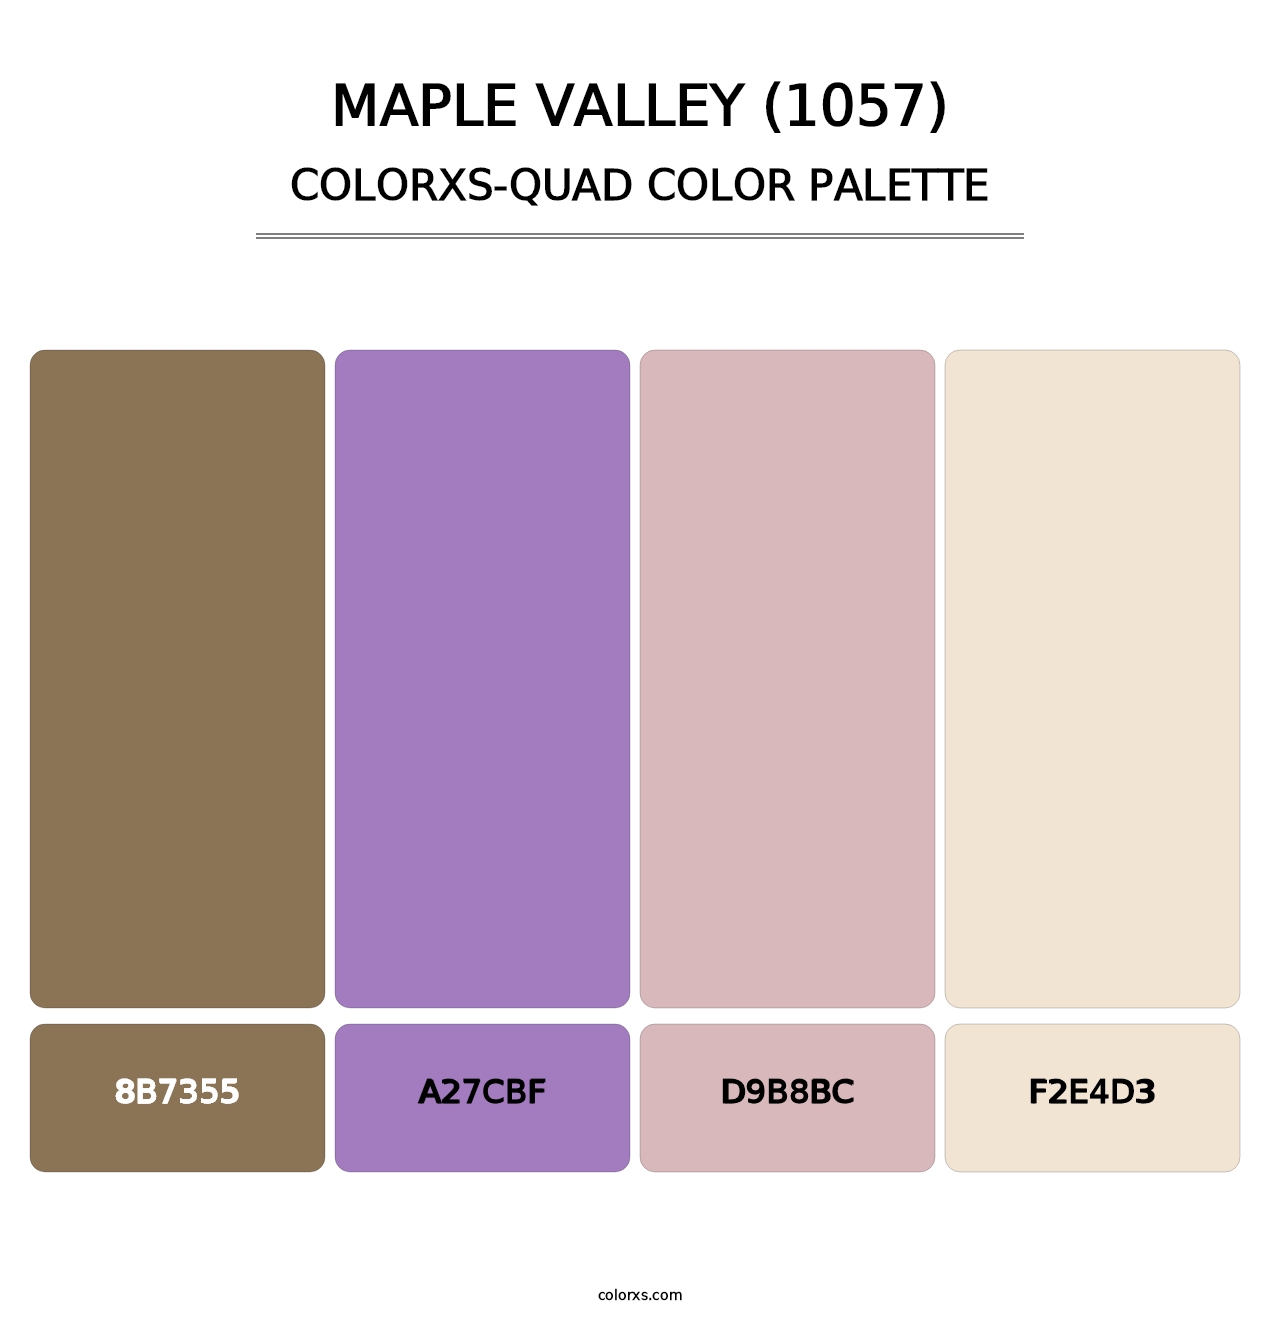 Maple Valley (1057) - Colorxs Quad Palette